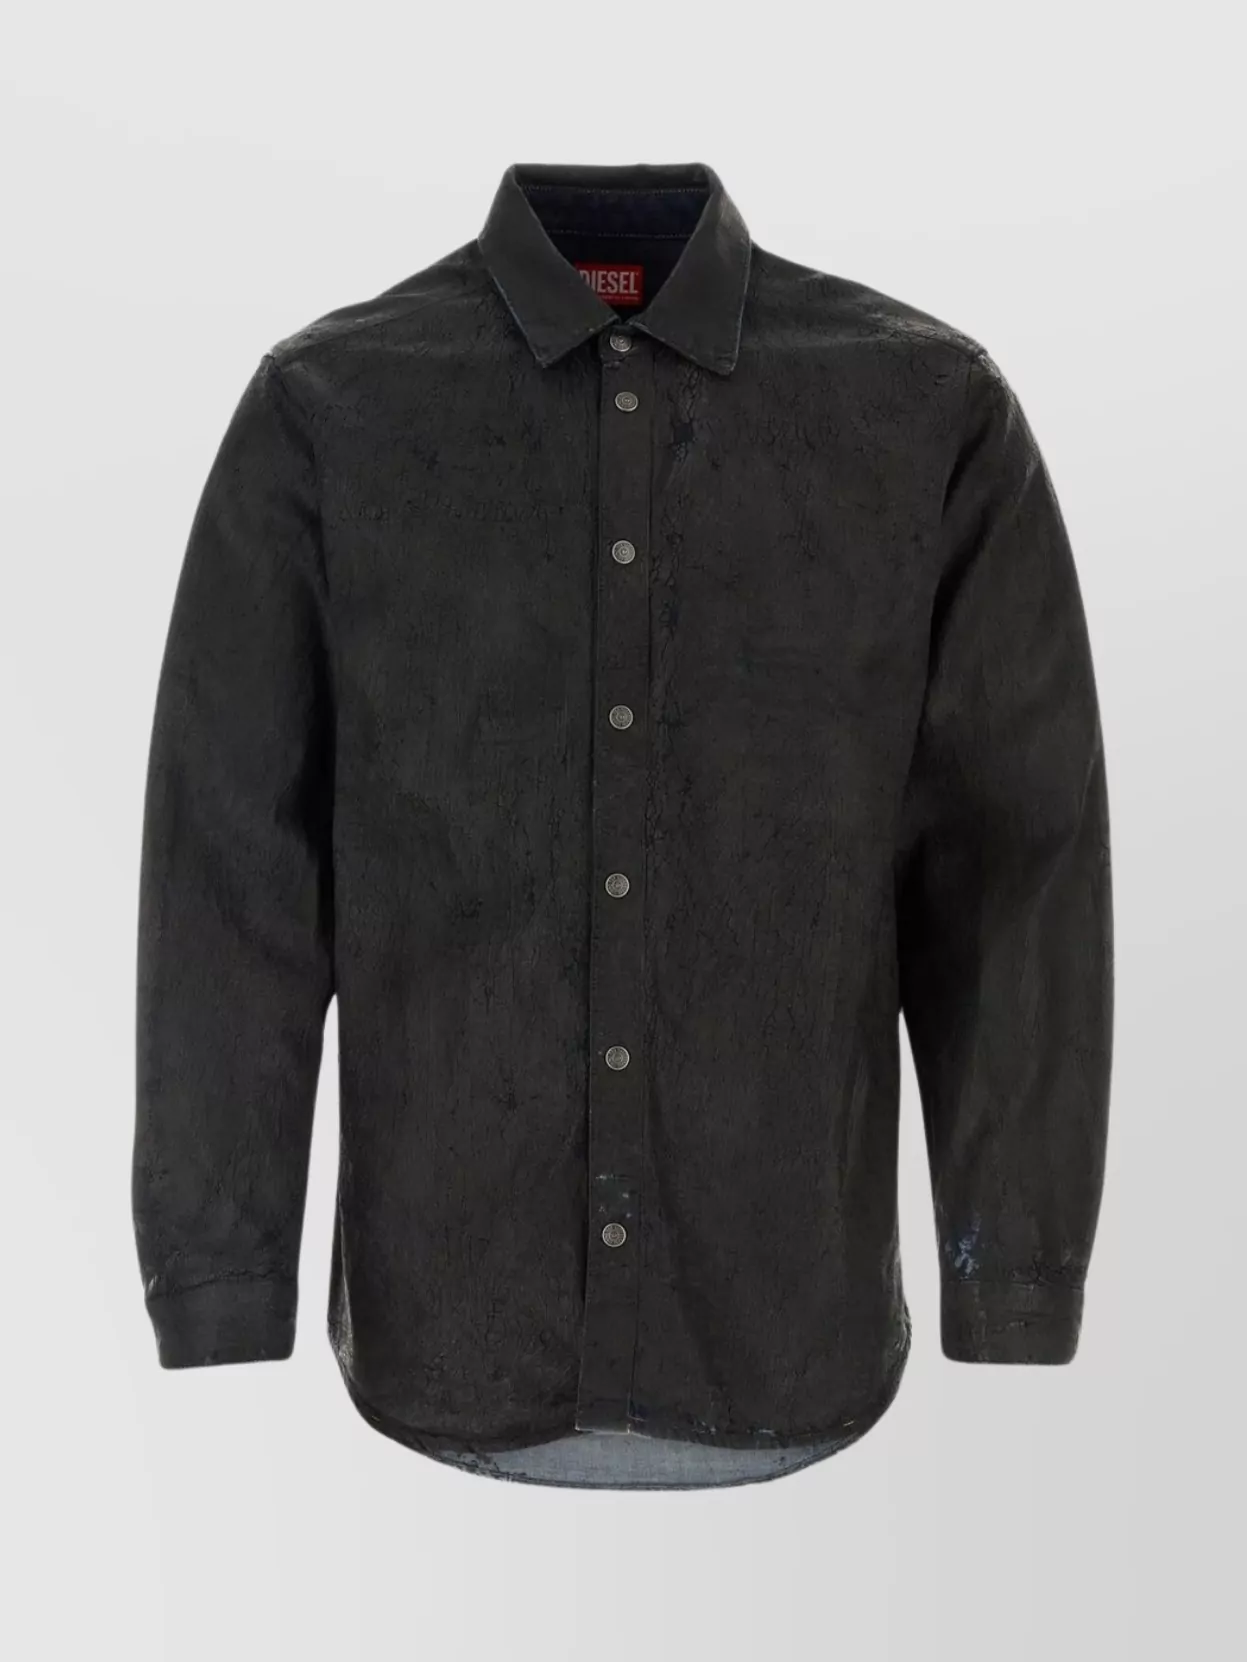 Diesel Denim Shirt Featuring Textured Fabric In Black